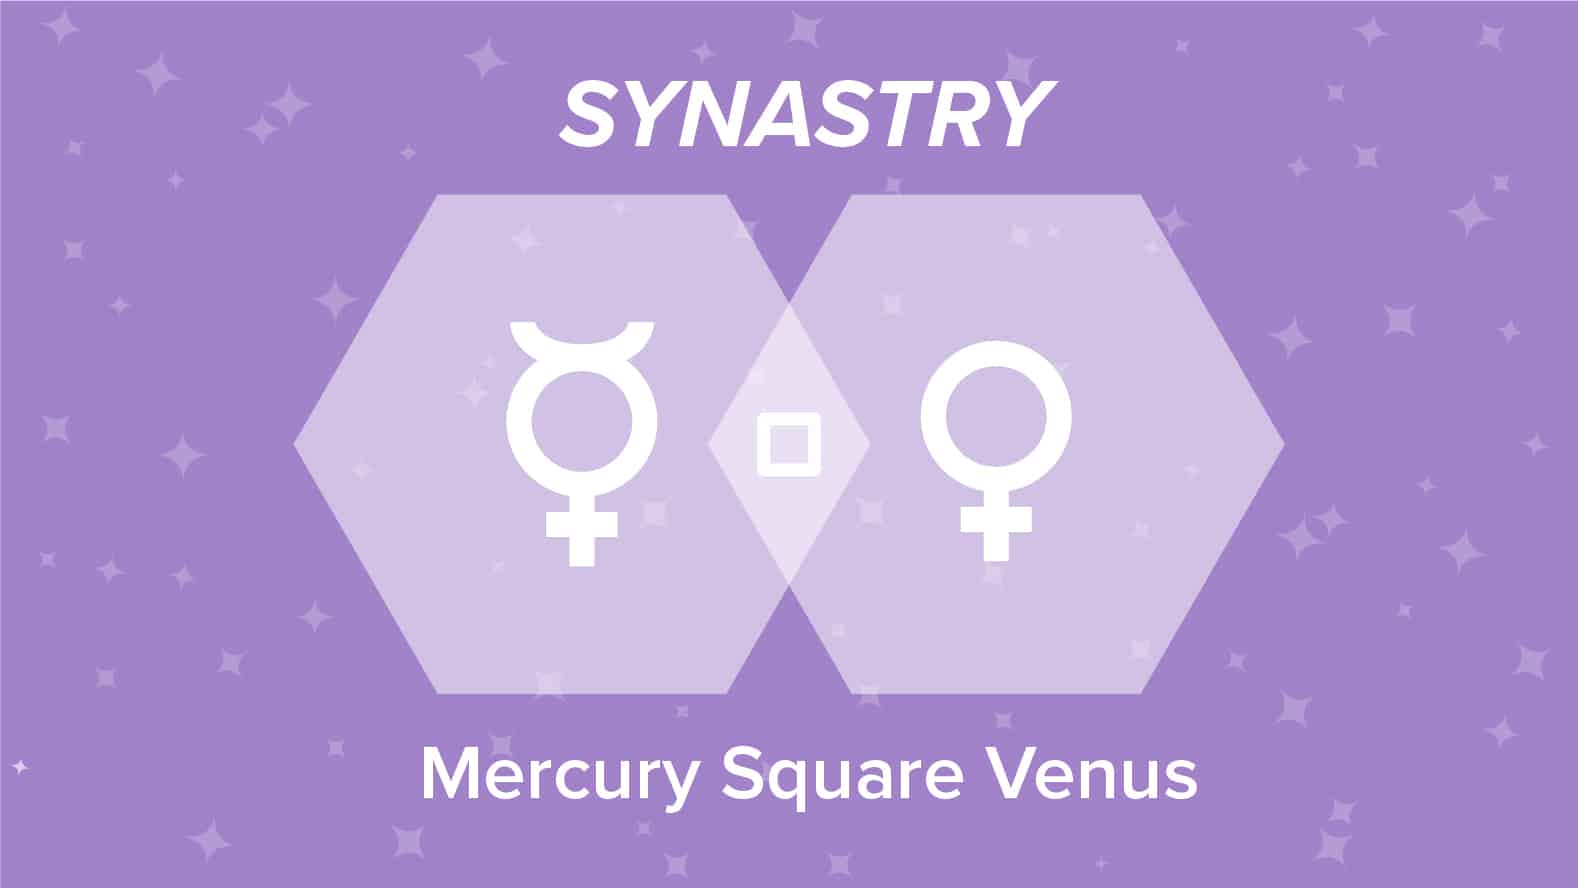 Mercury Square Venus Synastry